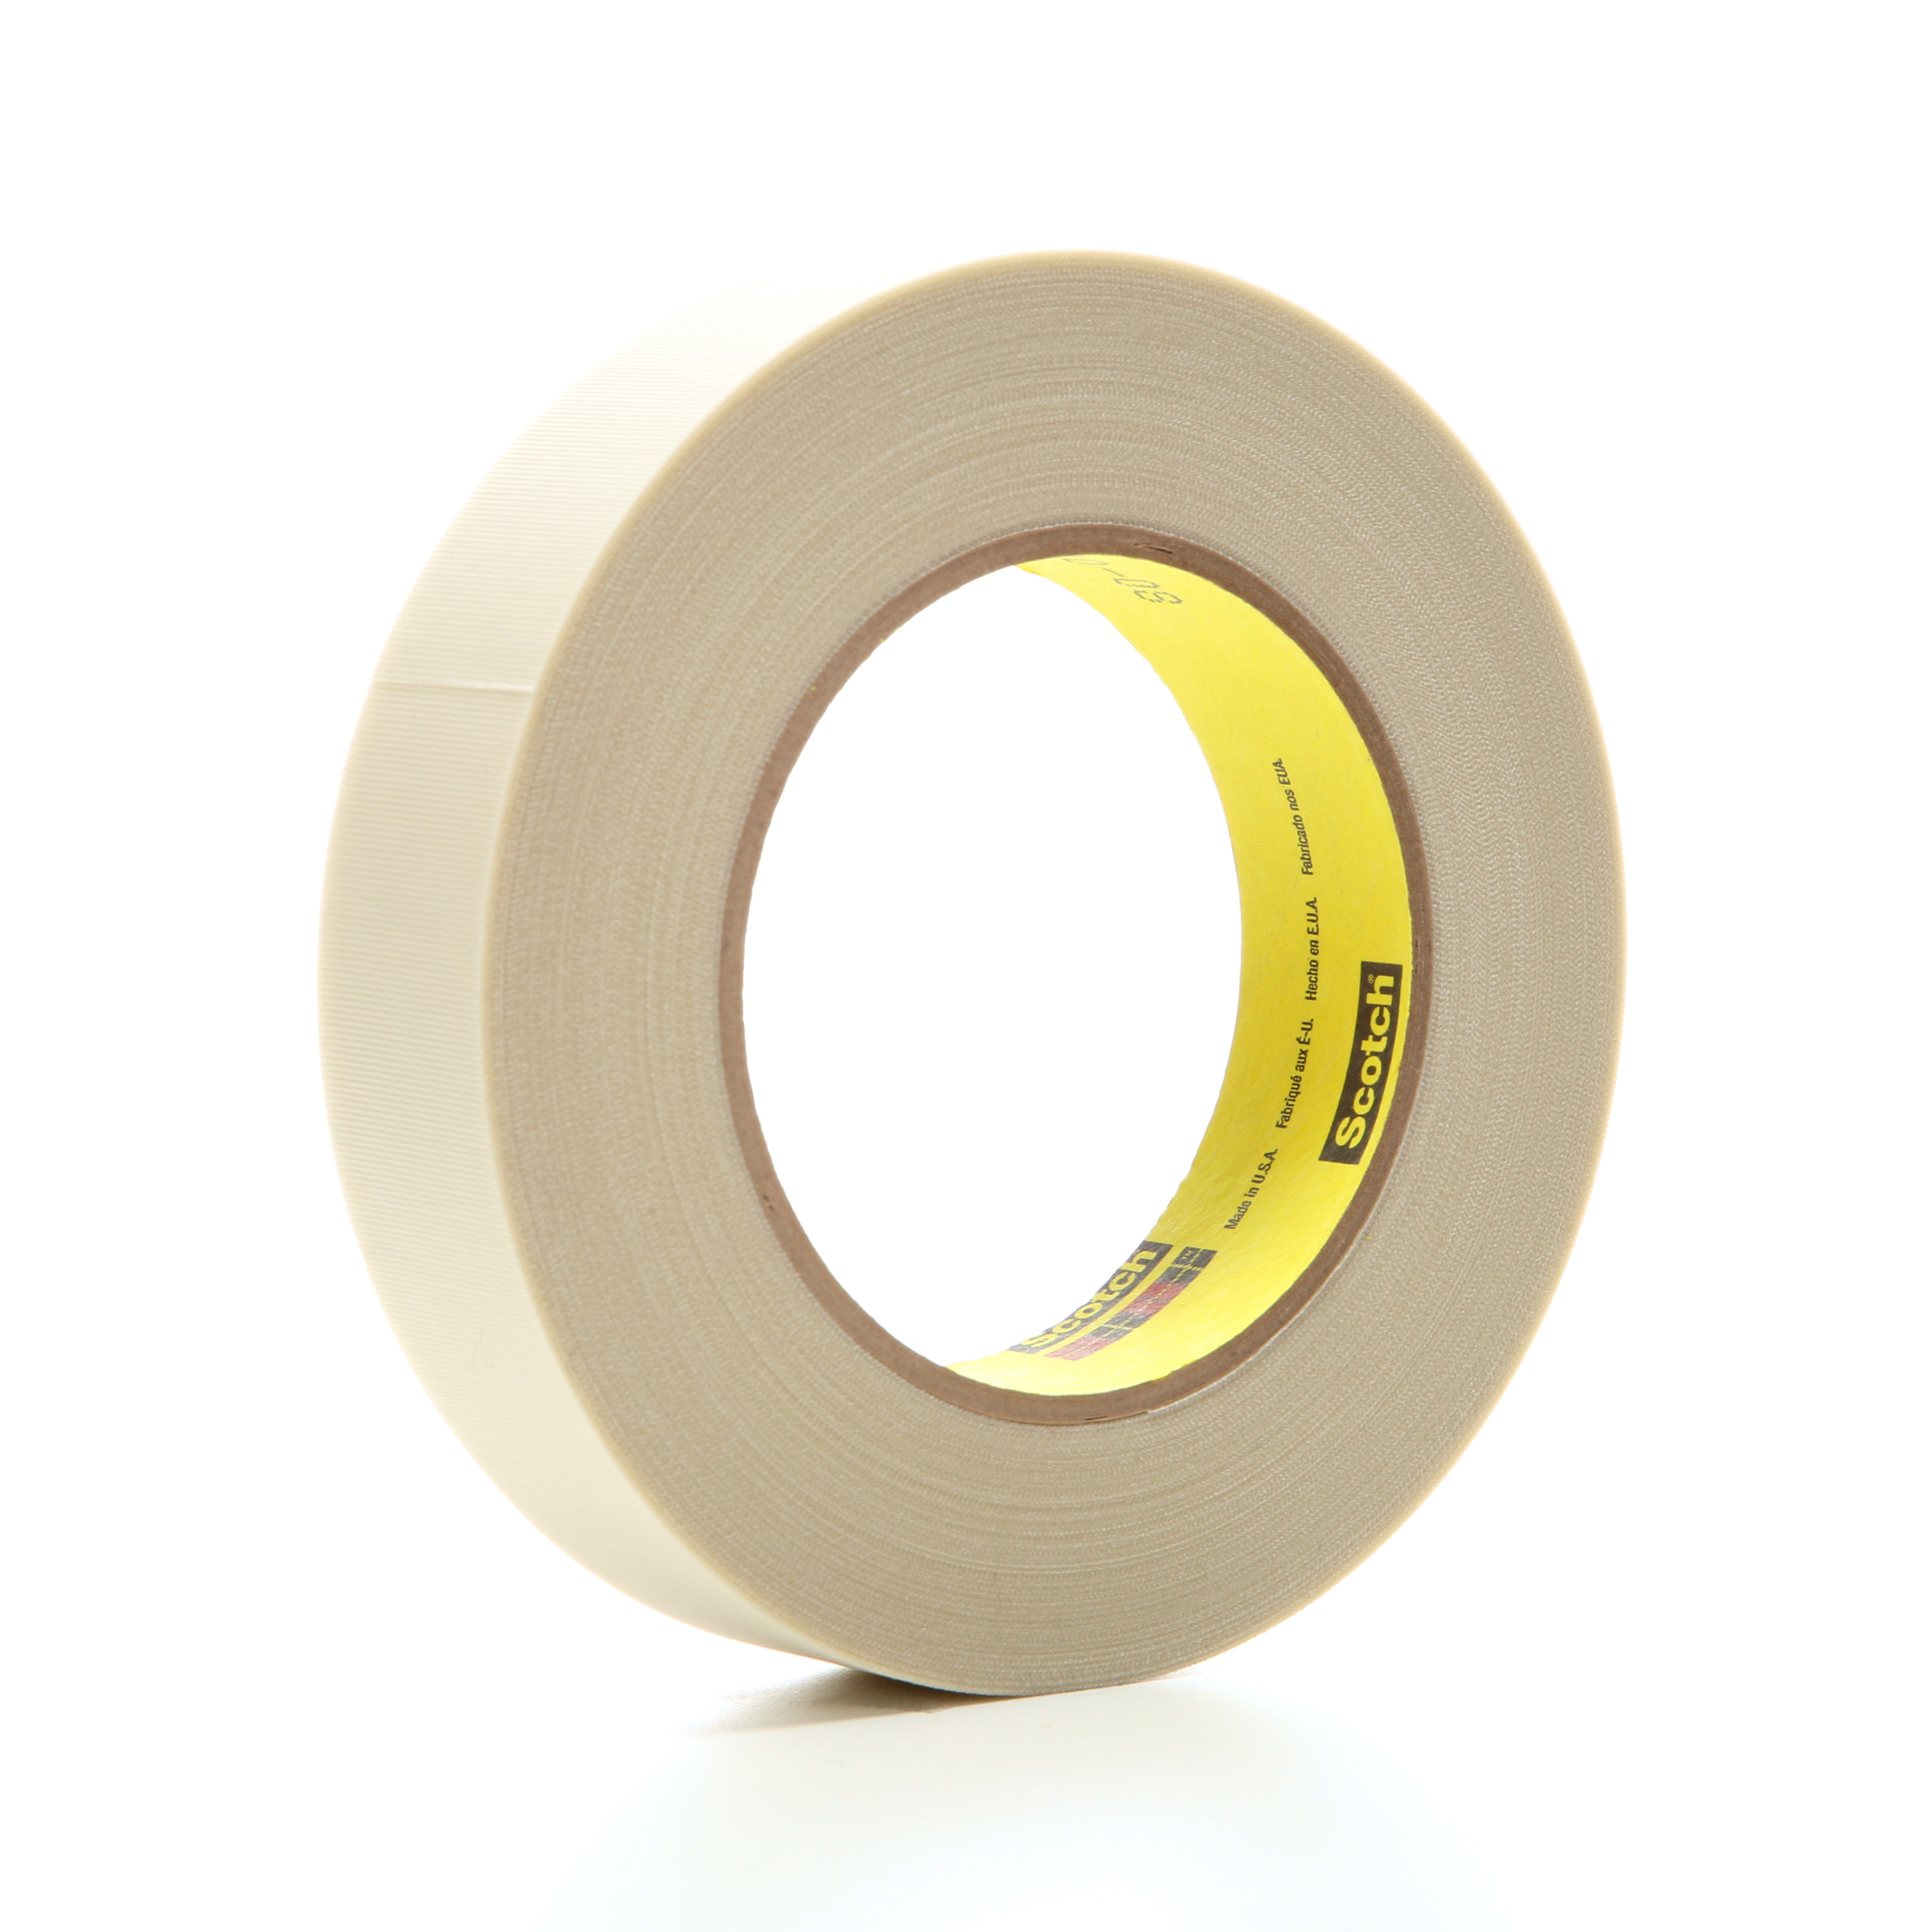 3M™ Glass Cloth Tape 361, White, 1 in x 60 yd, 6.4 mil, 36 rolls per
case